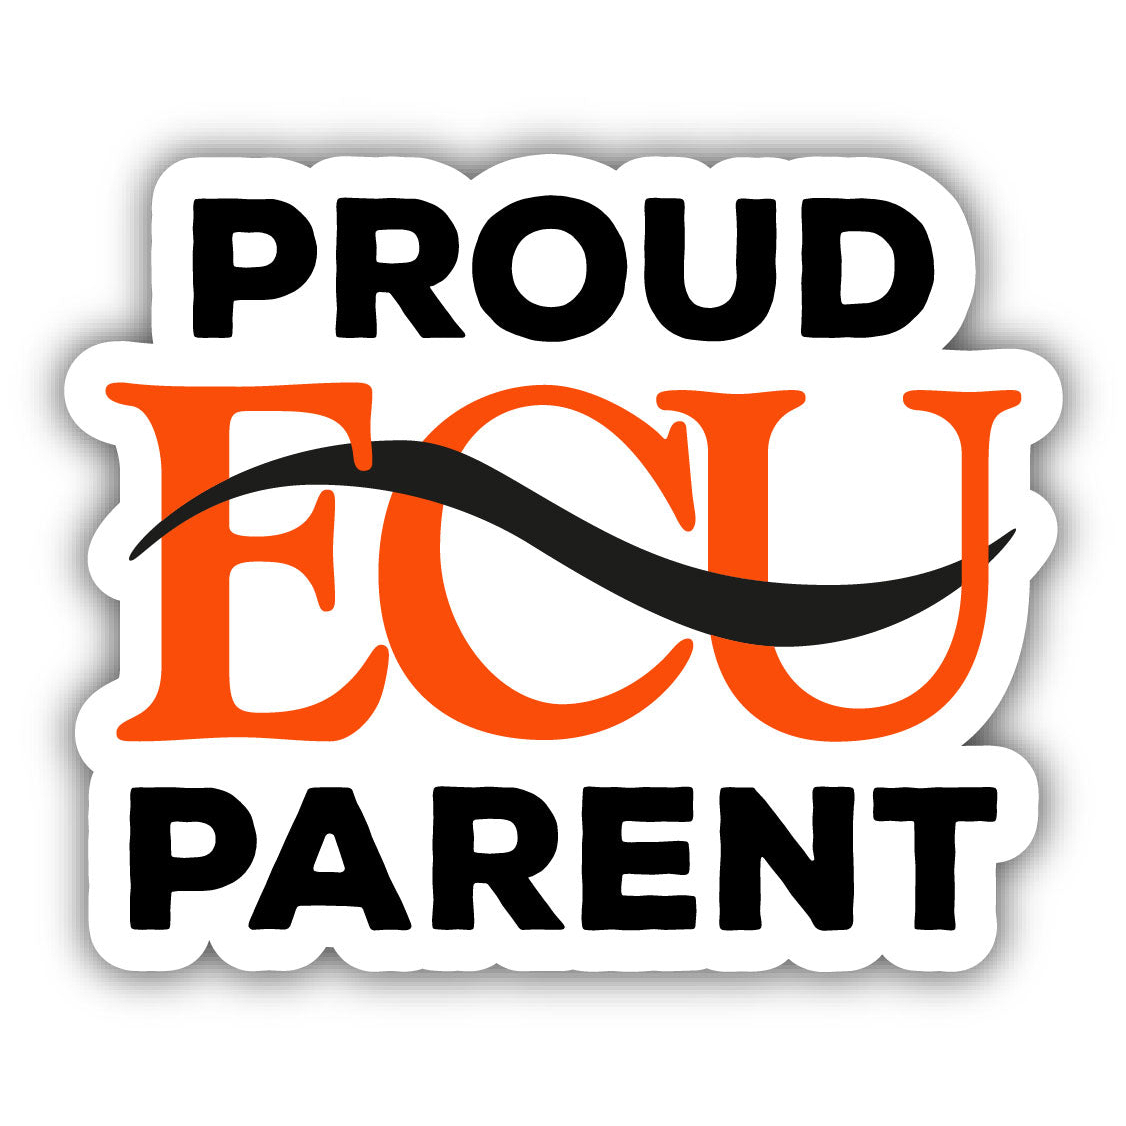 East Central University Proud Parent 4 Sticker - (4 Pack)